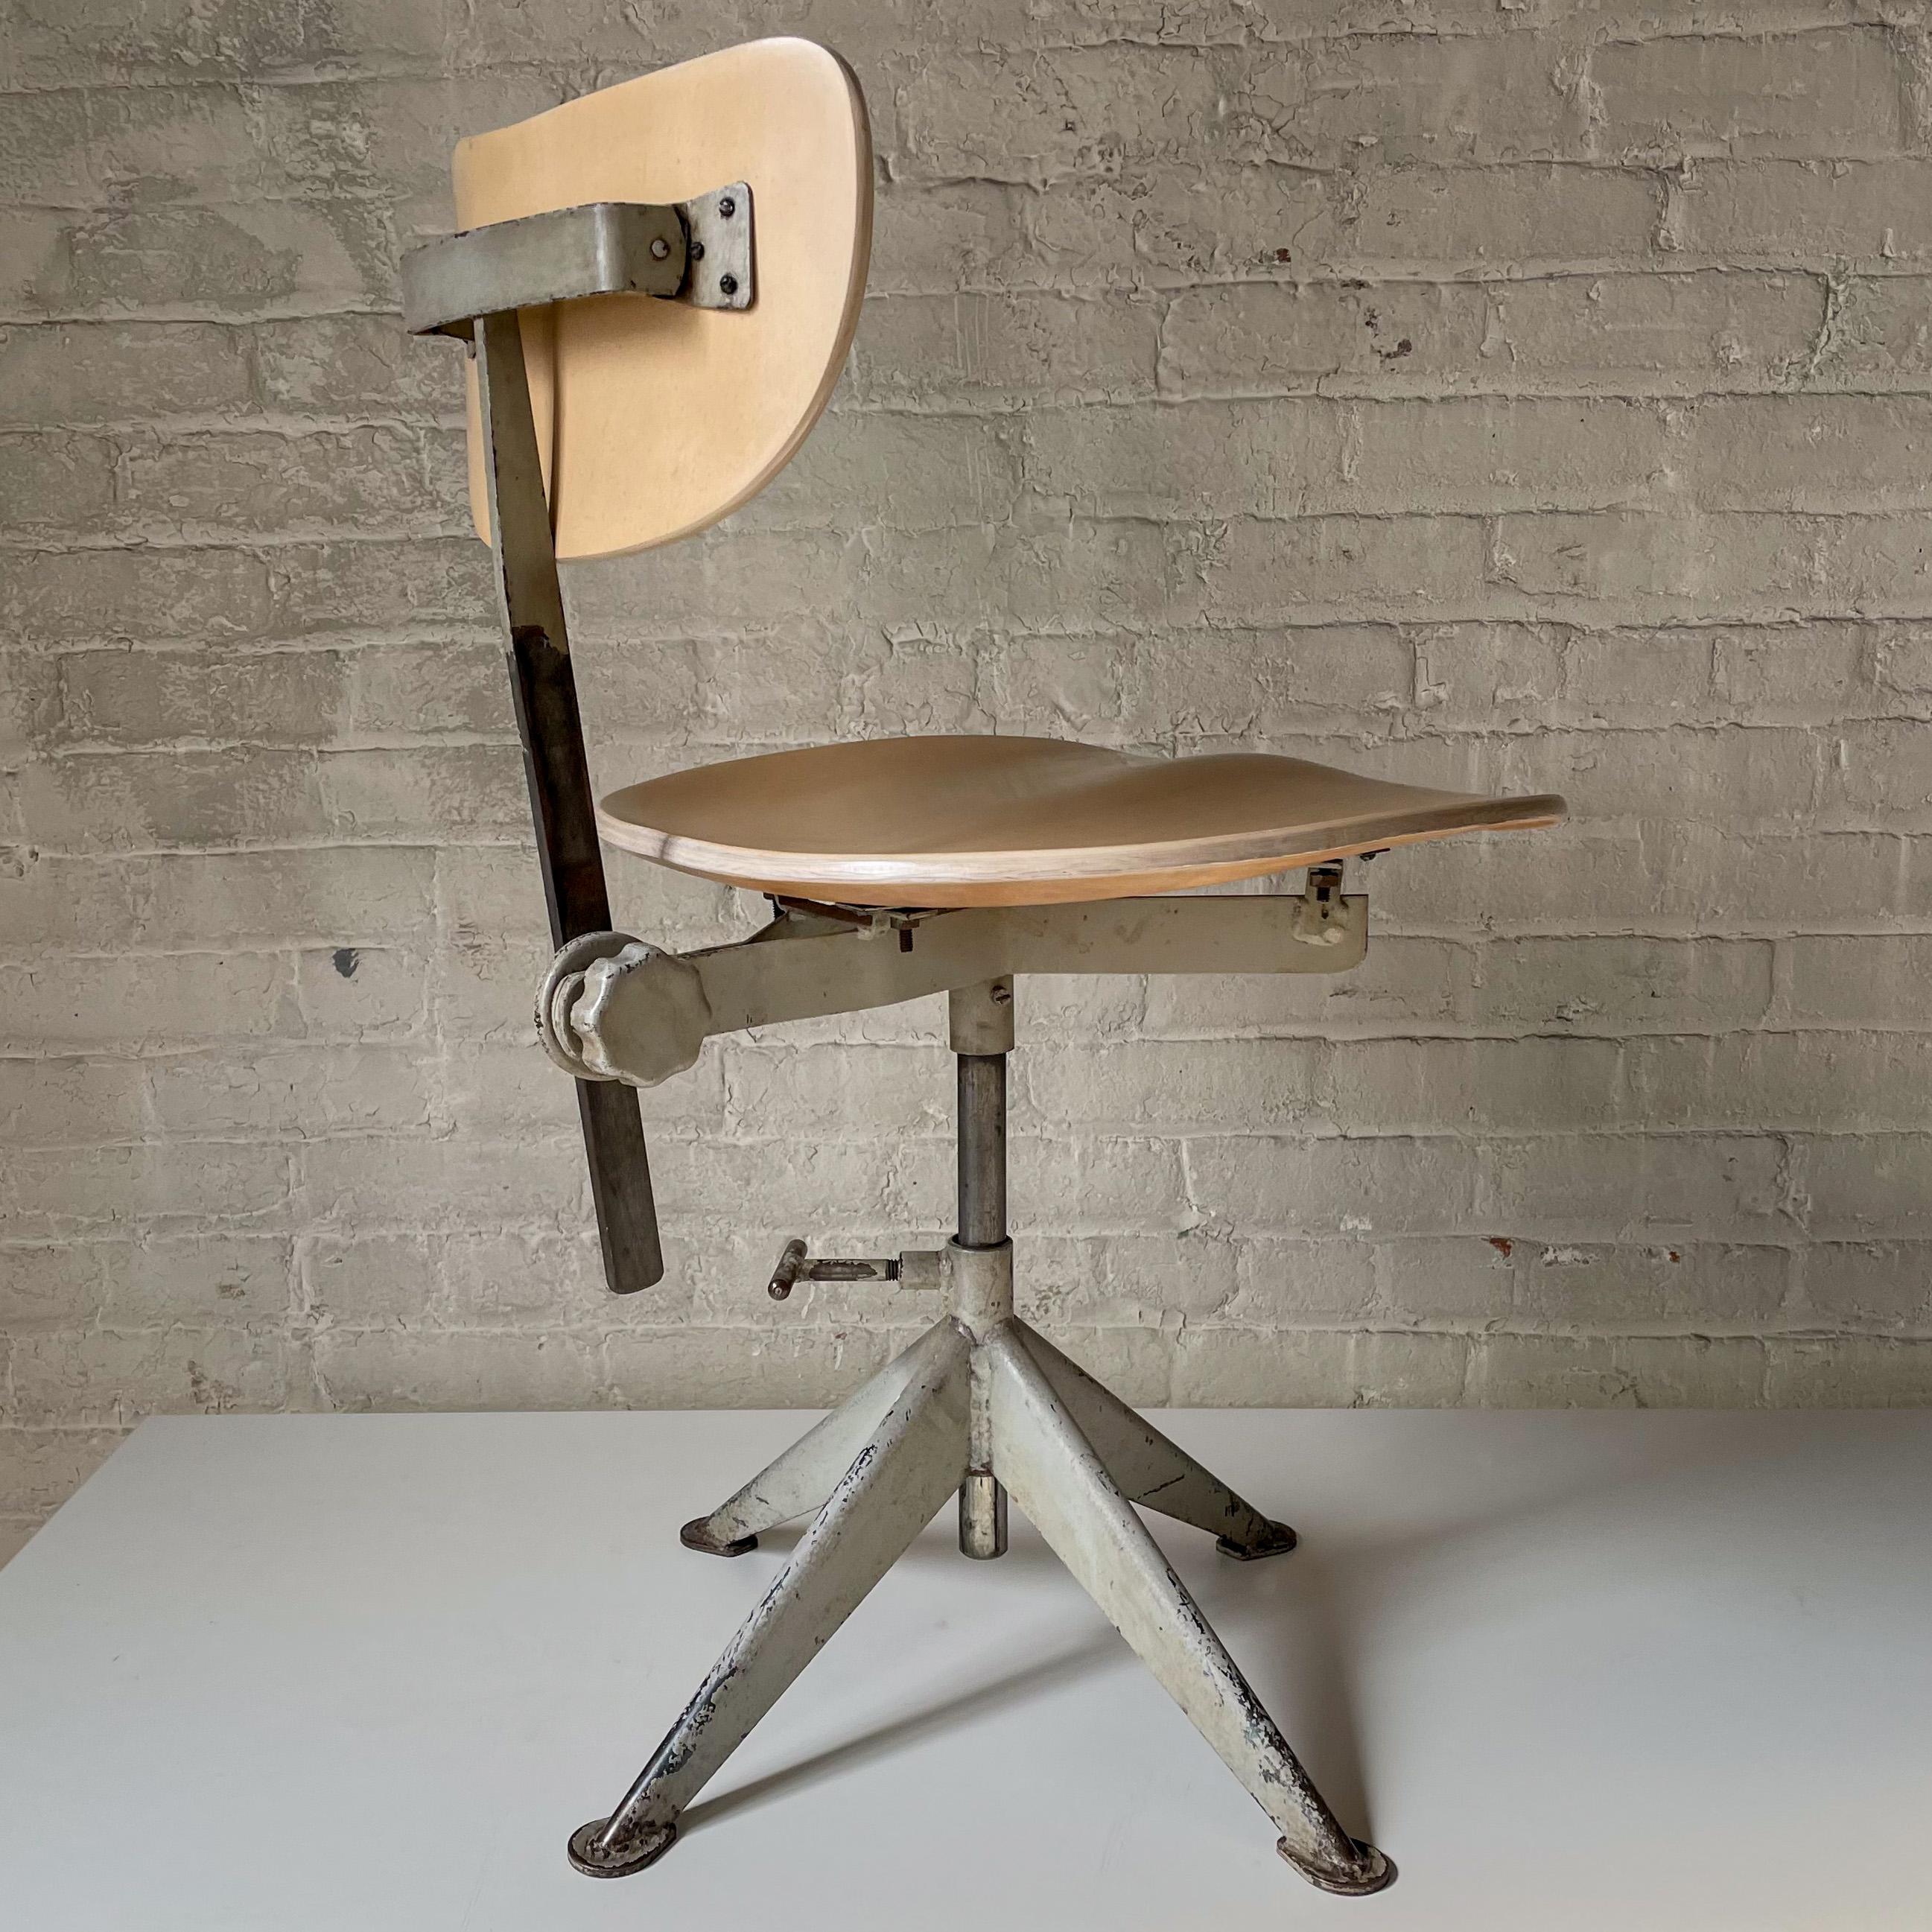 Arbeitsstuhl aus geformtem Birkensperrholz und lackiertem Stahl der schwedischen Metallbaufirma Odelberg Olsen, hergestellt um 1948 für den Vertrieb durch Knoll in den USA. Der Stuhl, der auf Prouve verweist, ist im Knoll-Katalog von 1948 abgebildet